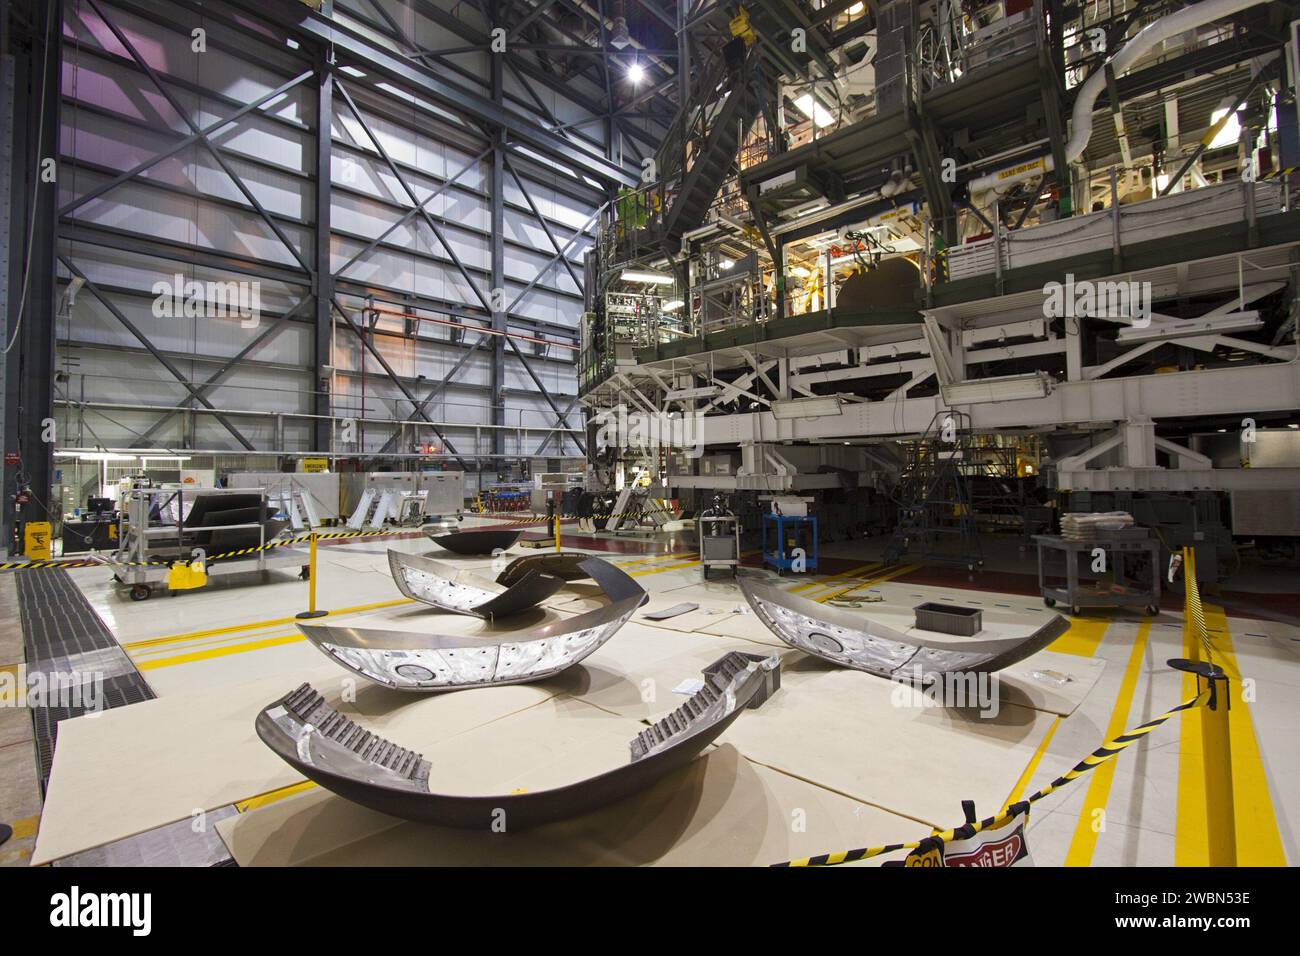 CAP CANAVERAL, Floride. – À l’intérieur de l’Orbiter Processing Facility-1 du Kennedy Space Center de la NASA en Floride, les paupières et les boucliers thermiques sont en cours de préparation pour l’installation sur les répliques des moteurs principaux de la navette Discovery. Les écrans thermiques sont composés de deux sections en forme de demi-cercle de tuiles de système de protection thermique qui entourent les moteurs. Le travail fait partie du processus de transition et de retrait de Shuttle Discovery dans le cadre du Programme de la navette spatiale. Discovery est en préparation pour être exposé au Musée national de l’Air et de l’espace du Smithsonian, Steven F. Udvar-Hazy Center à Chantilly, va Banque D'Images